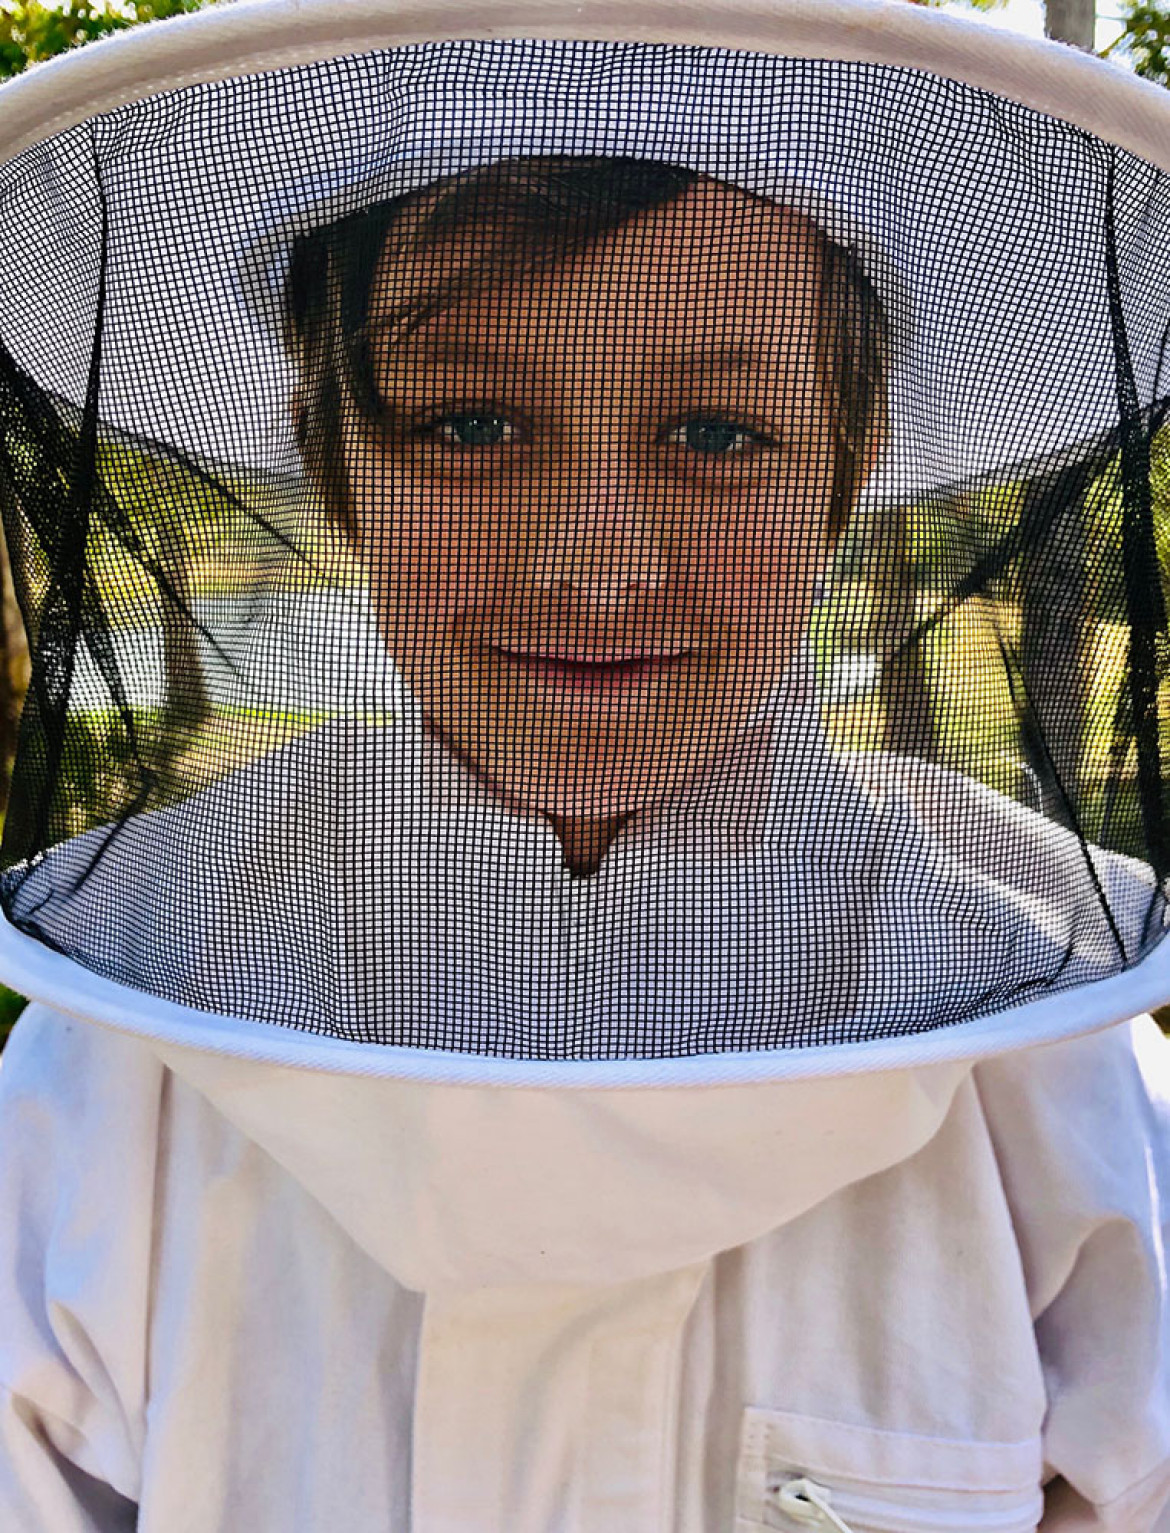 fot. Christian Horgan, "Little Beekeeper", 2. miejsce w kategorii Portrait / IPPA 2019